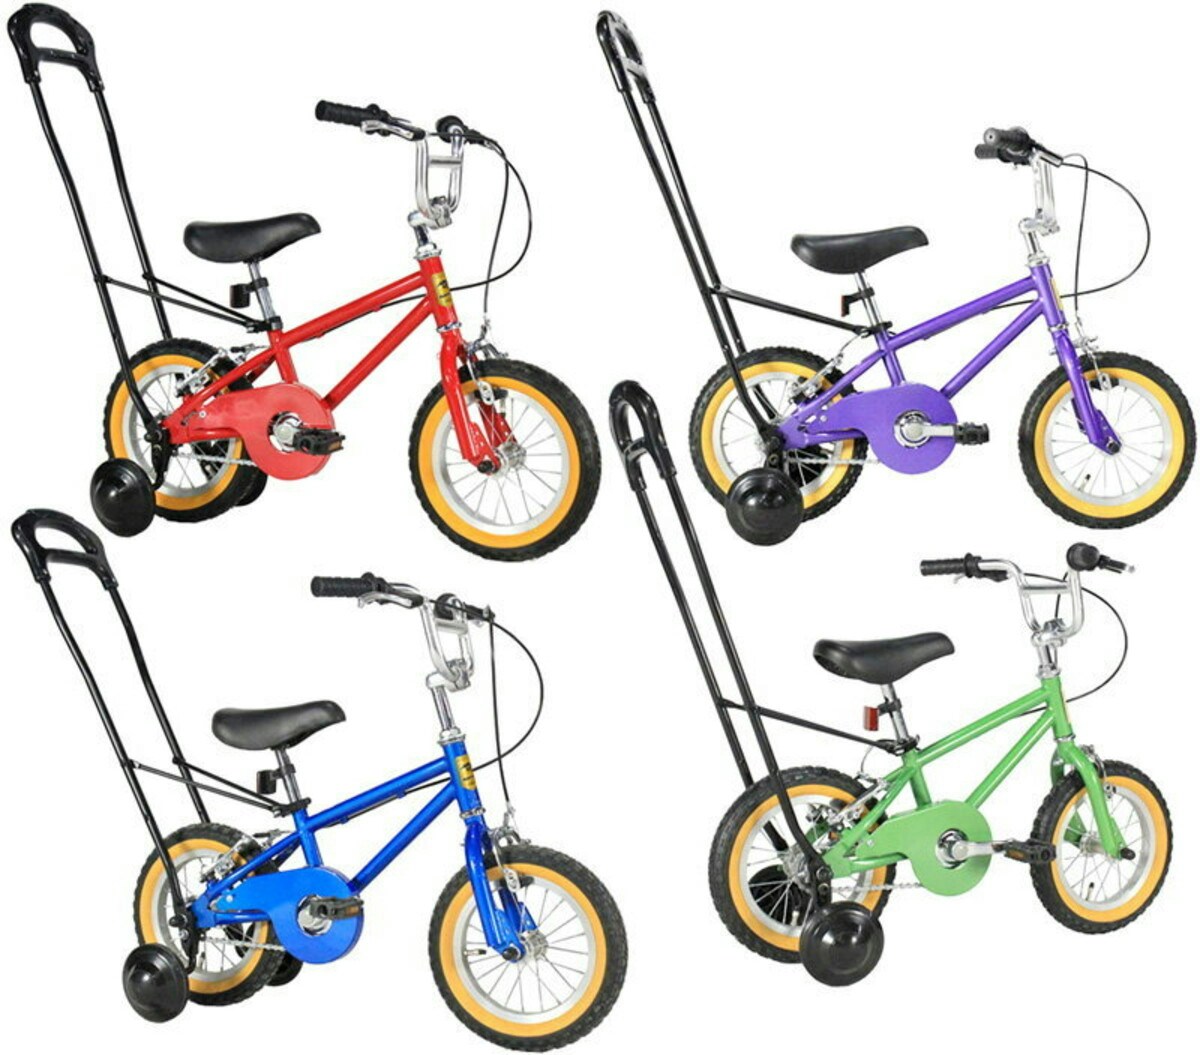 「手押し棒付き補助輪付き子ども用自転車」